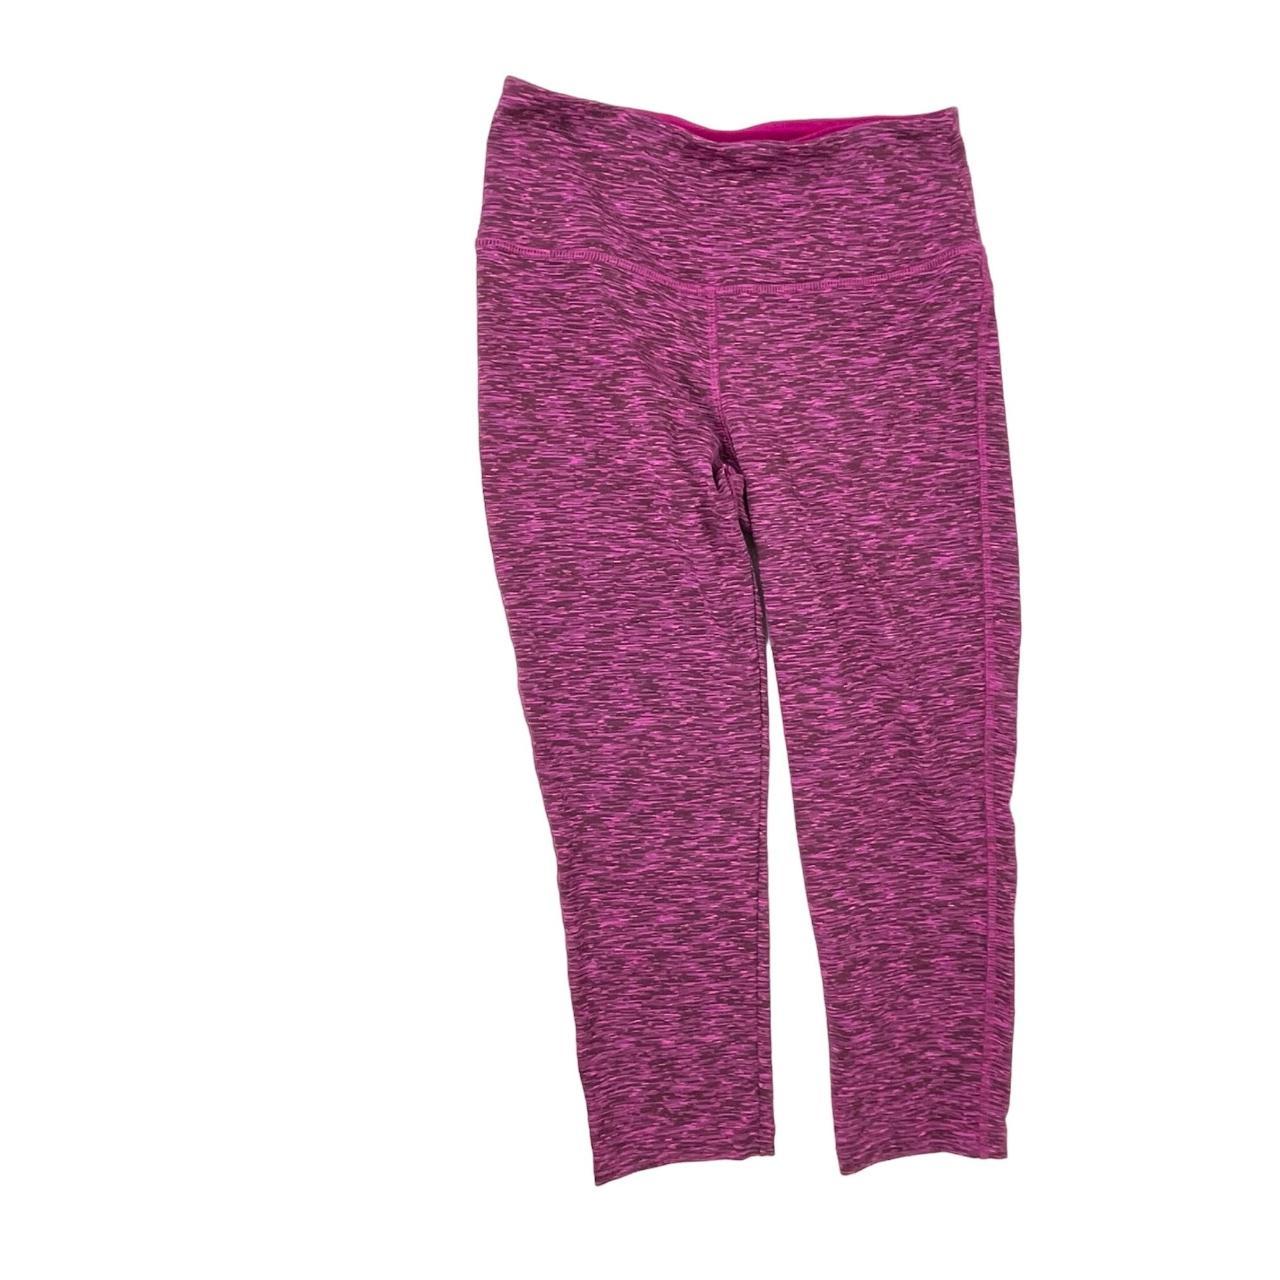 VOGO Athletica leggings Capri length 88% polyester - Depop